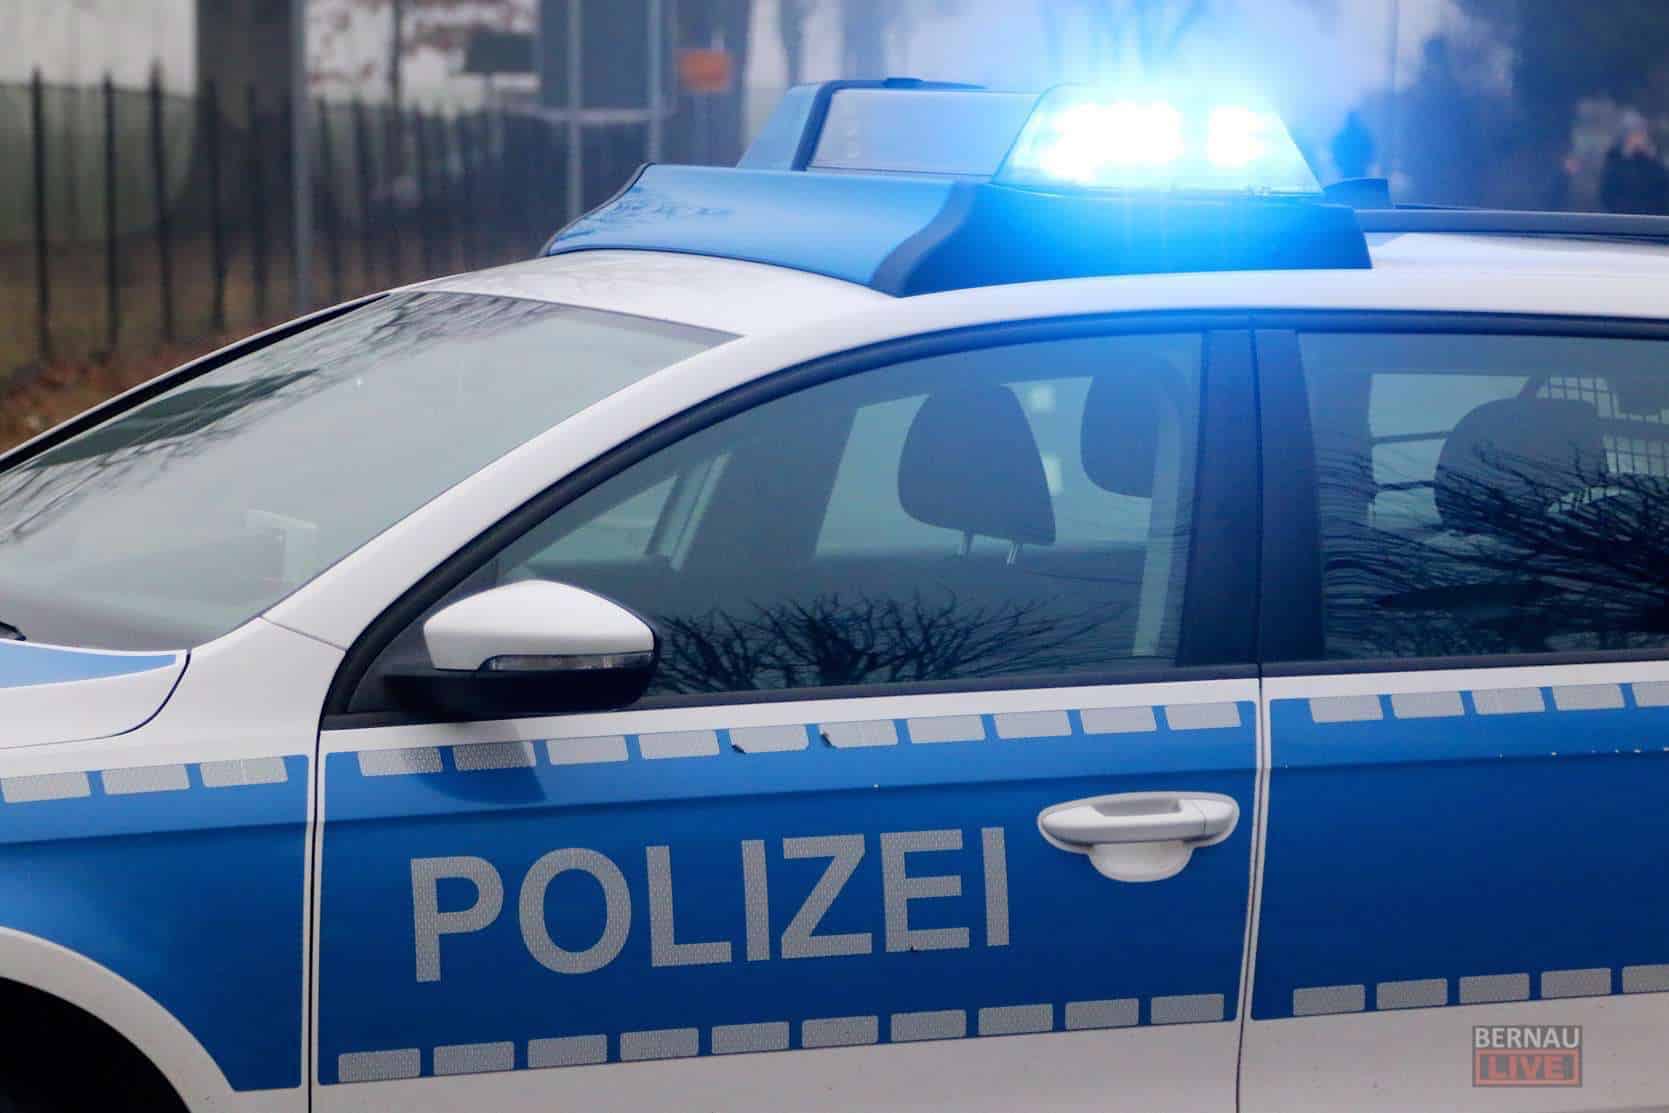 Polizei Barnim: LKW kam von der Straße ab - 24-jährige randaliert im Bhf. Bernau